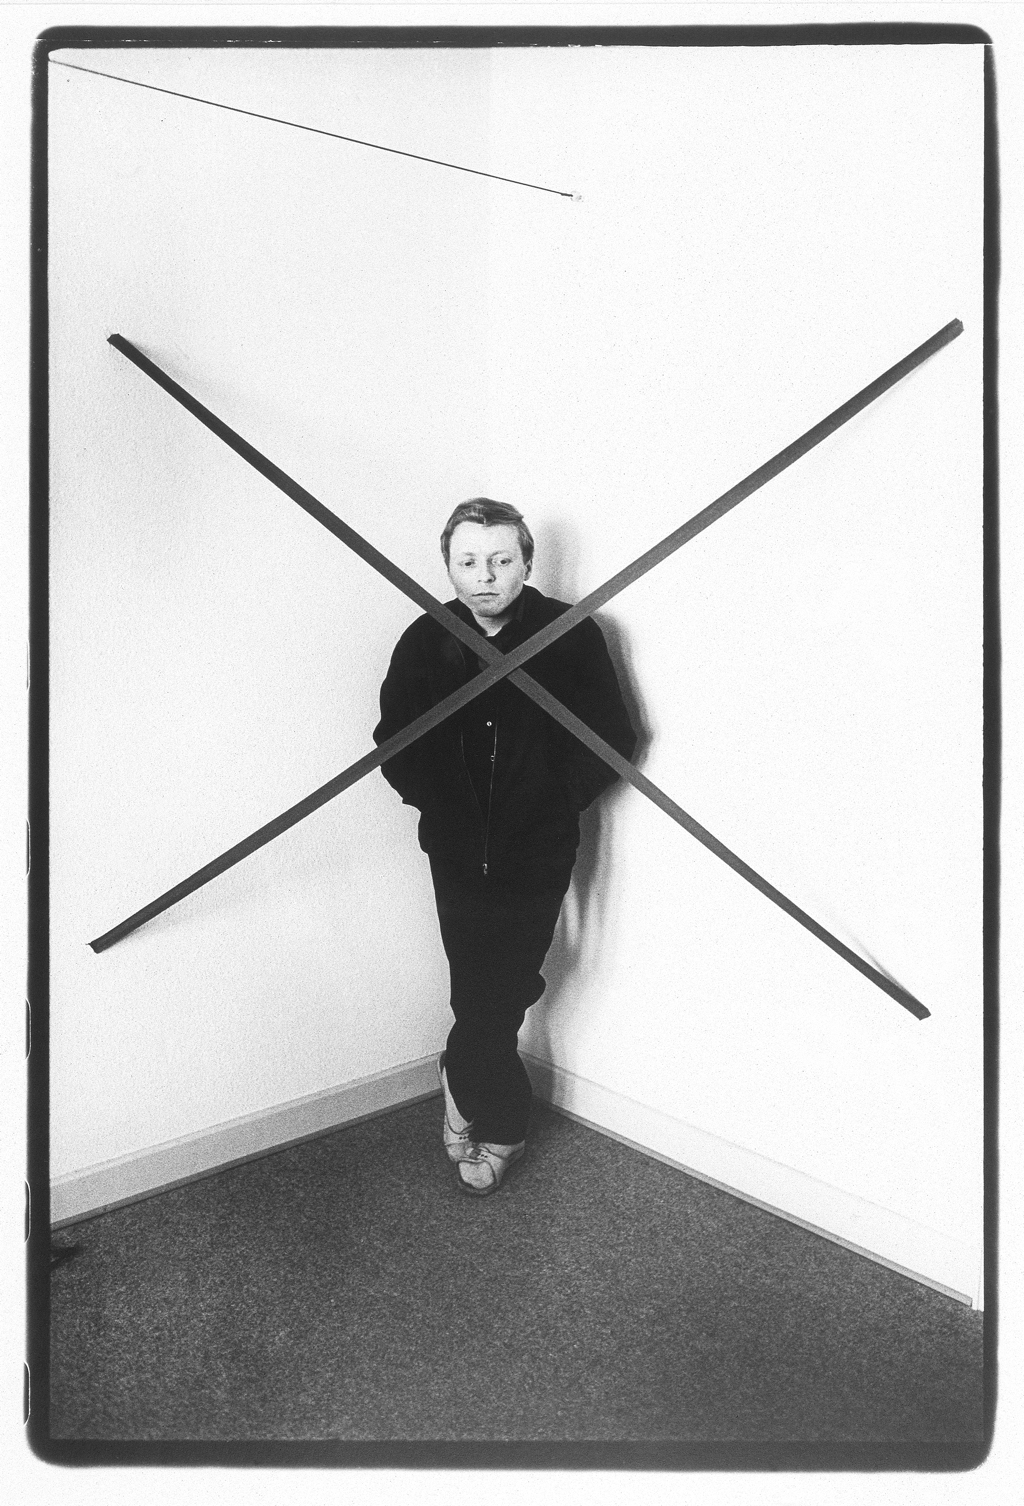 Werk - Porträts aus der Düsseldorfer Kunstszene 1968-1977 - MNK_02101_130-00-1991_jansen_durchkreuzung_001.jpg